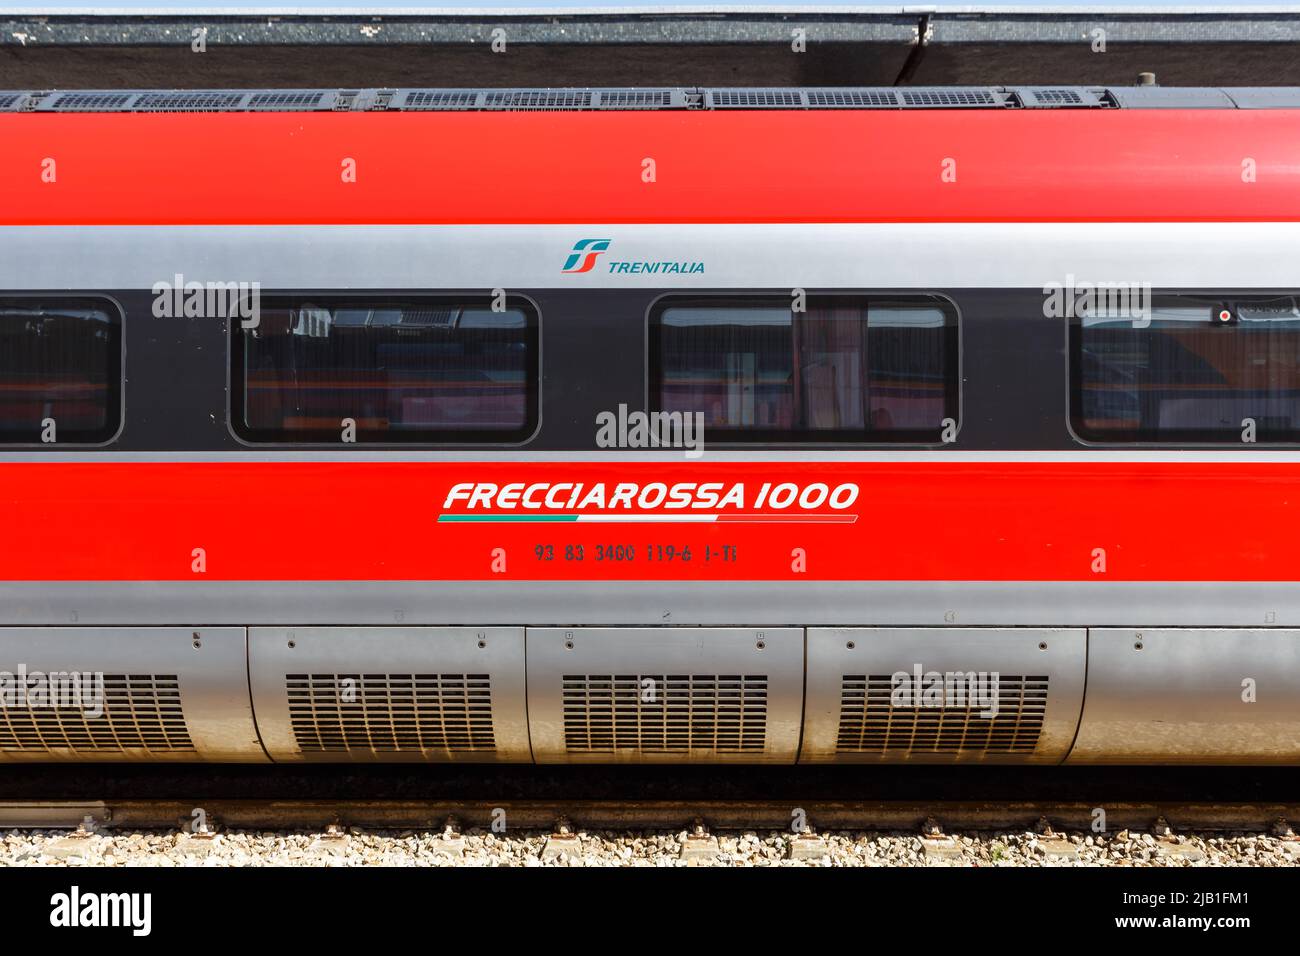 Venecia, Italia - 21 de marzo de 2022: Tren con el logotipo de Frecciarossa FS ETR 1000 tren de alta velocidad de Trenitalia en la estación ferroviaria de Venecia Santa Lucía i Foto de stock